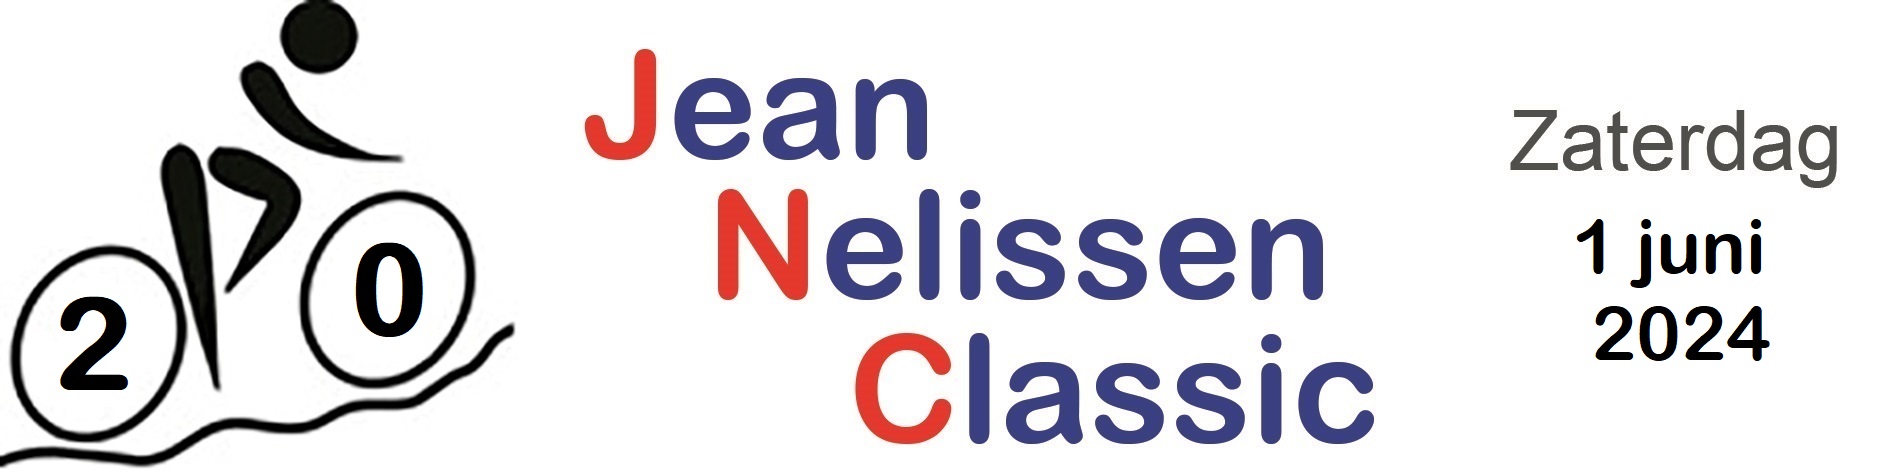 20e Jean Nelissen Classic